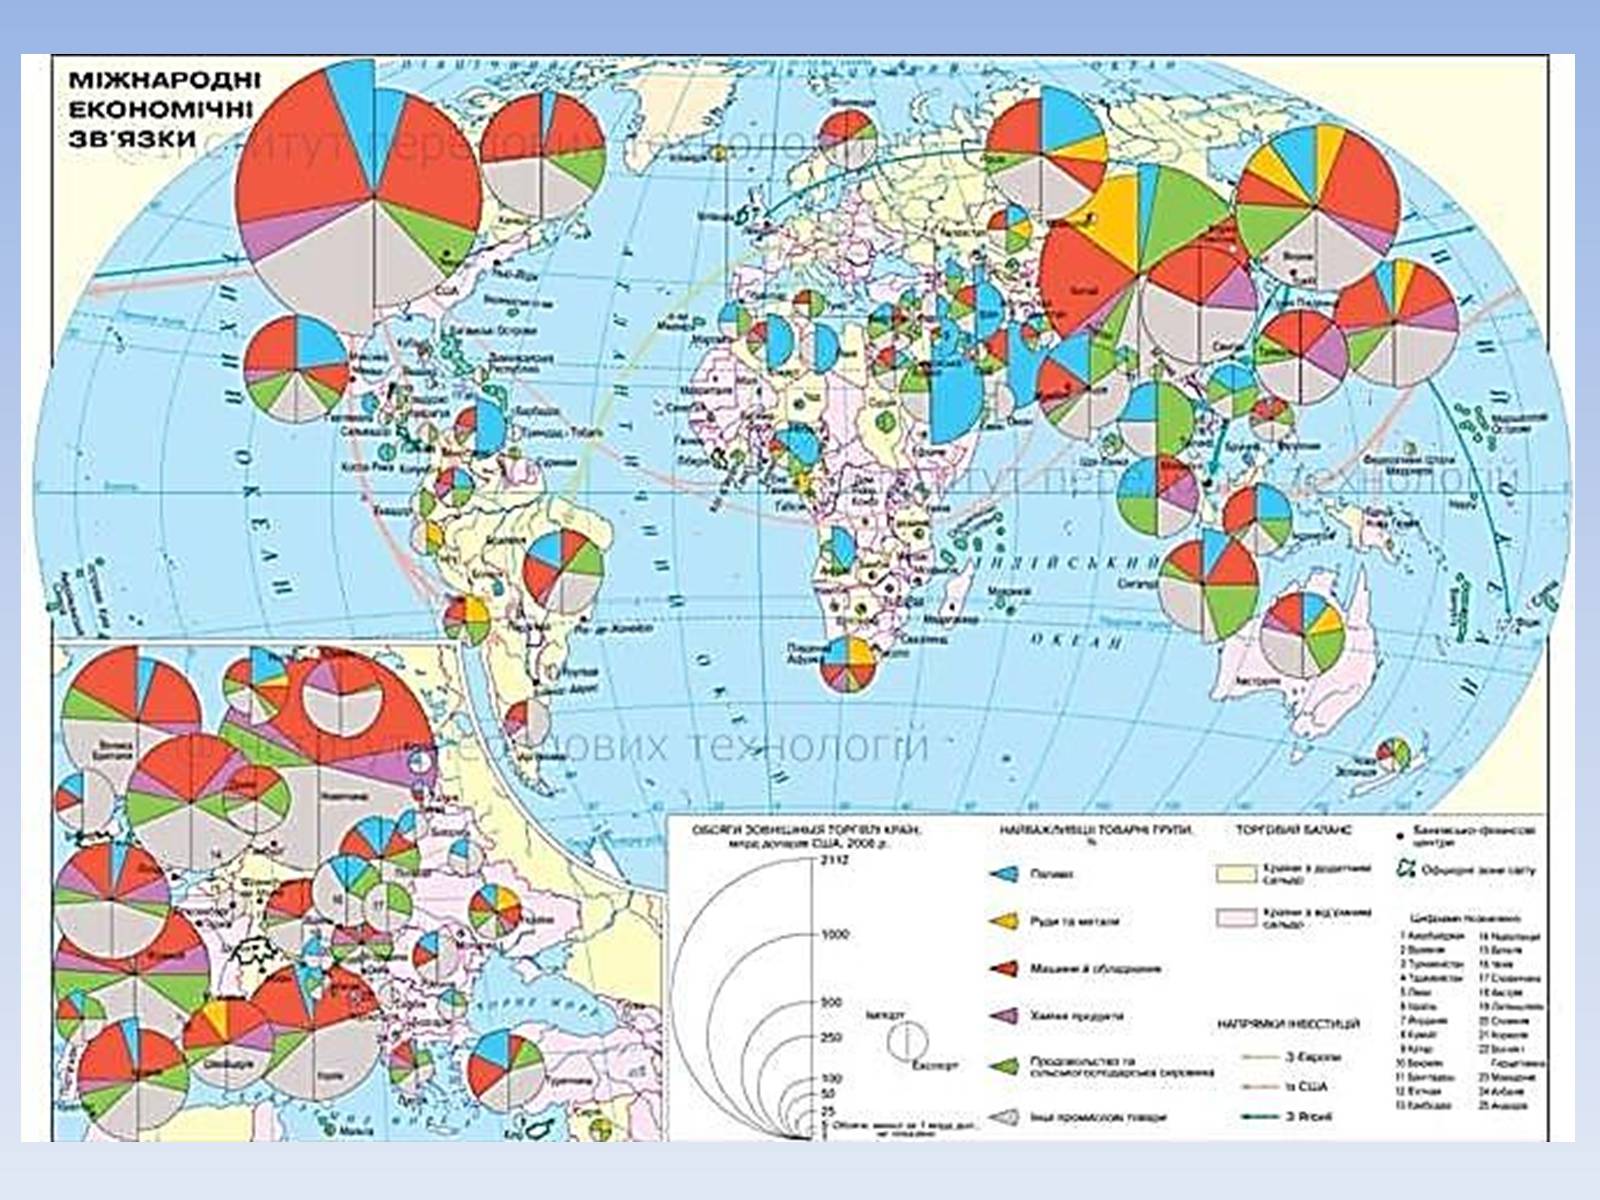 Мировые центры промышленности. Международные экономические отношения карта.